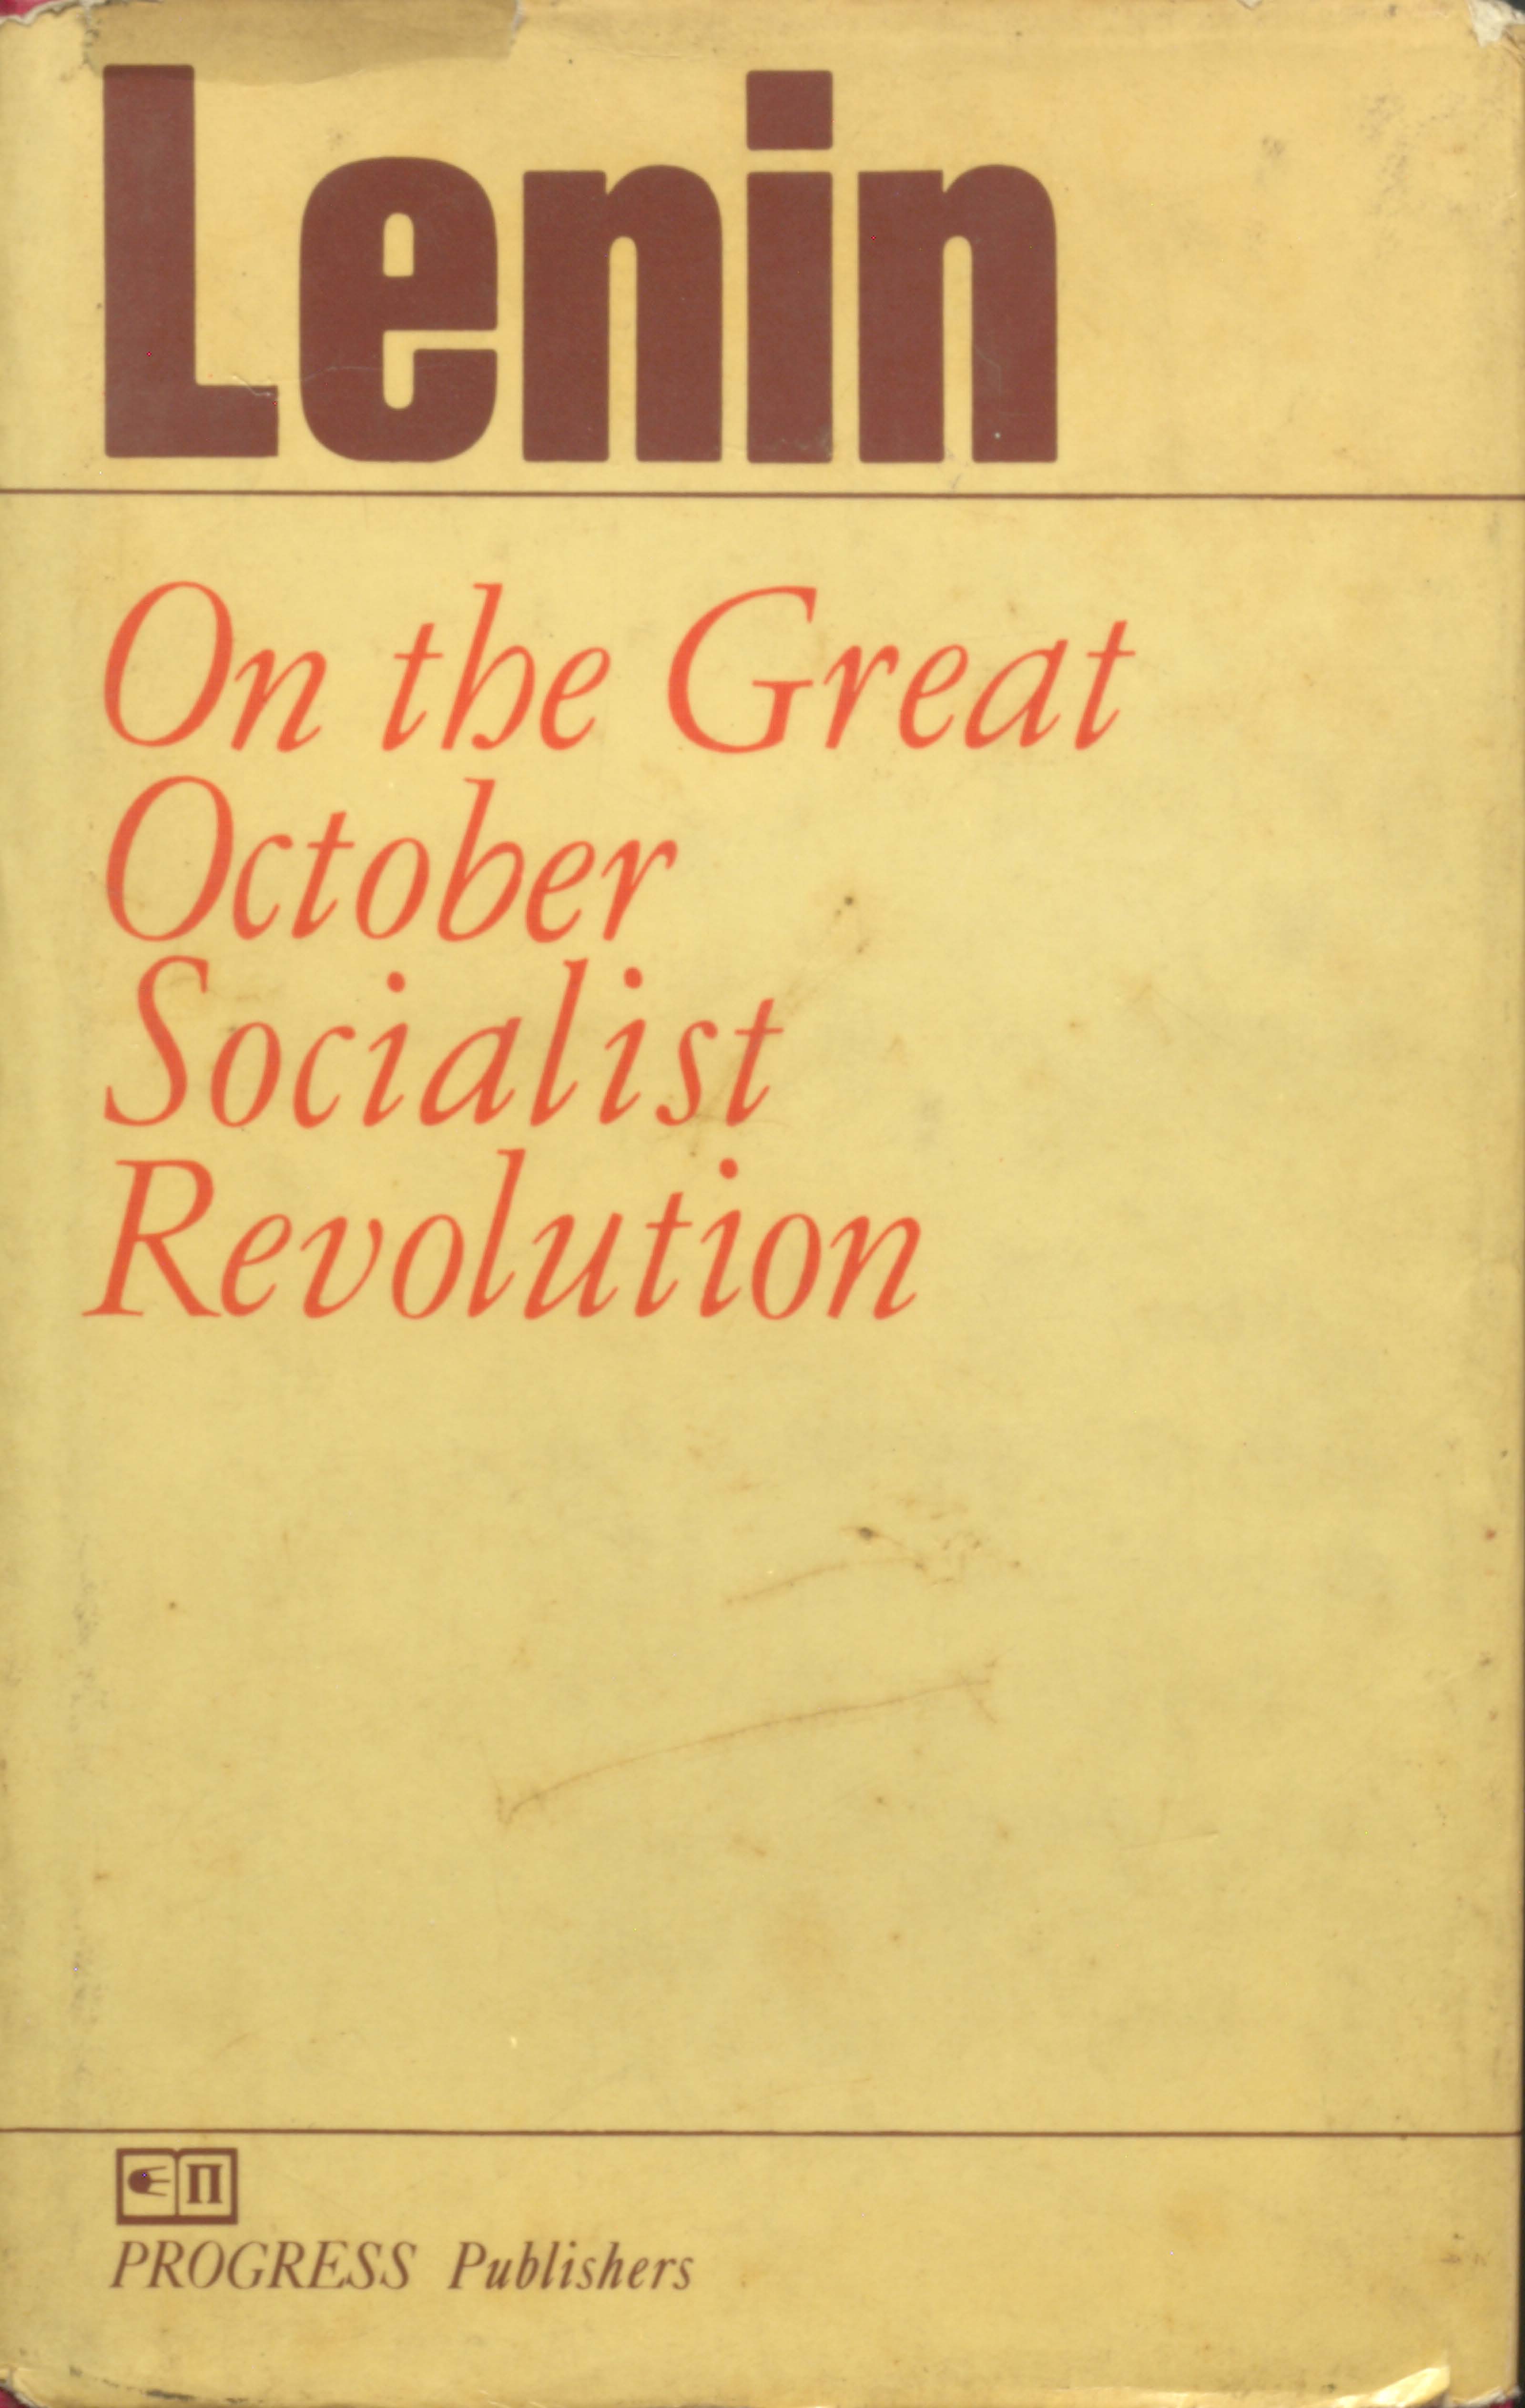 Lenin on the great october socialist revolution